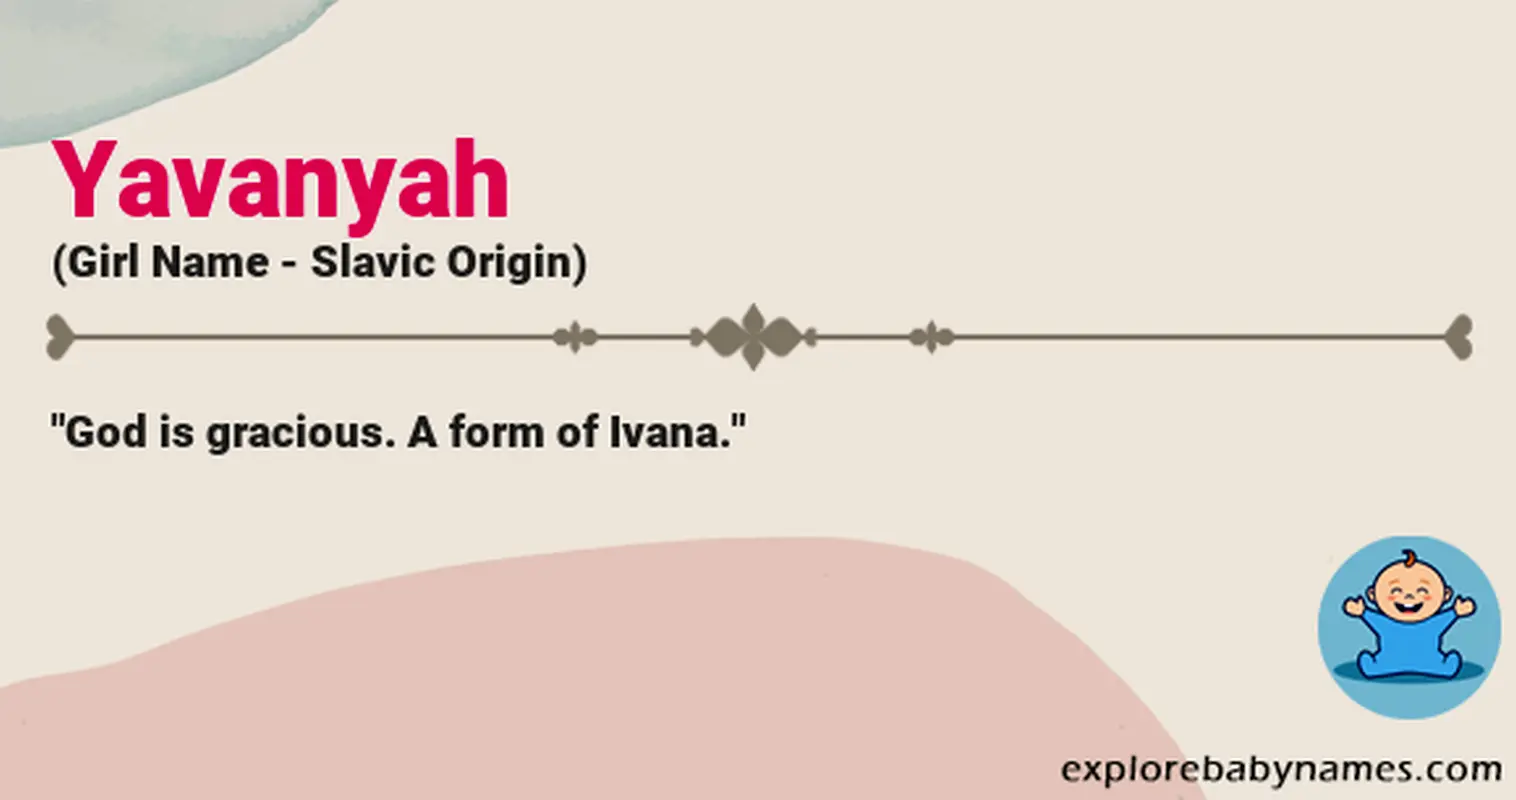 Meaning of Yavanyah